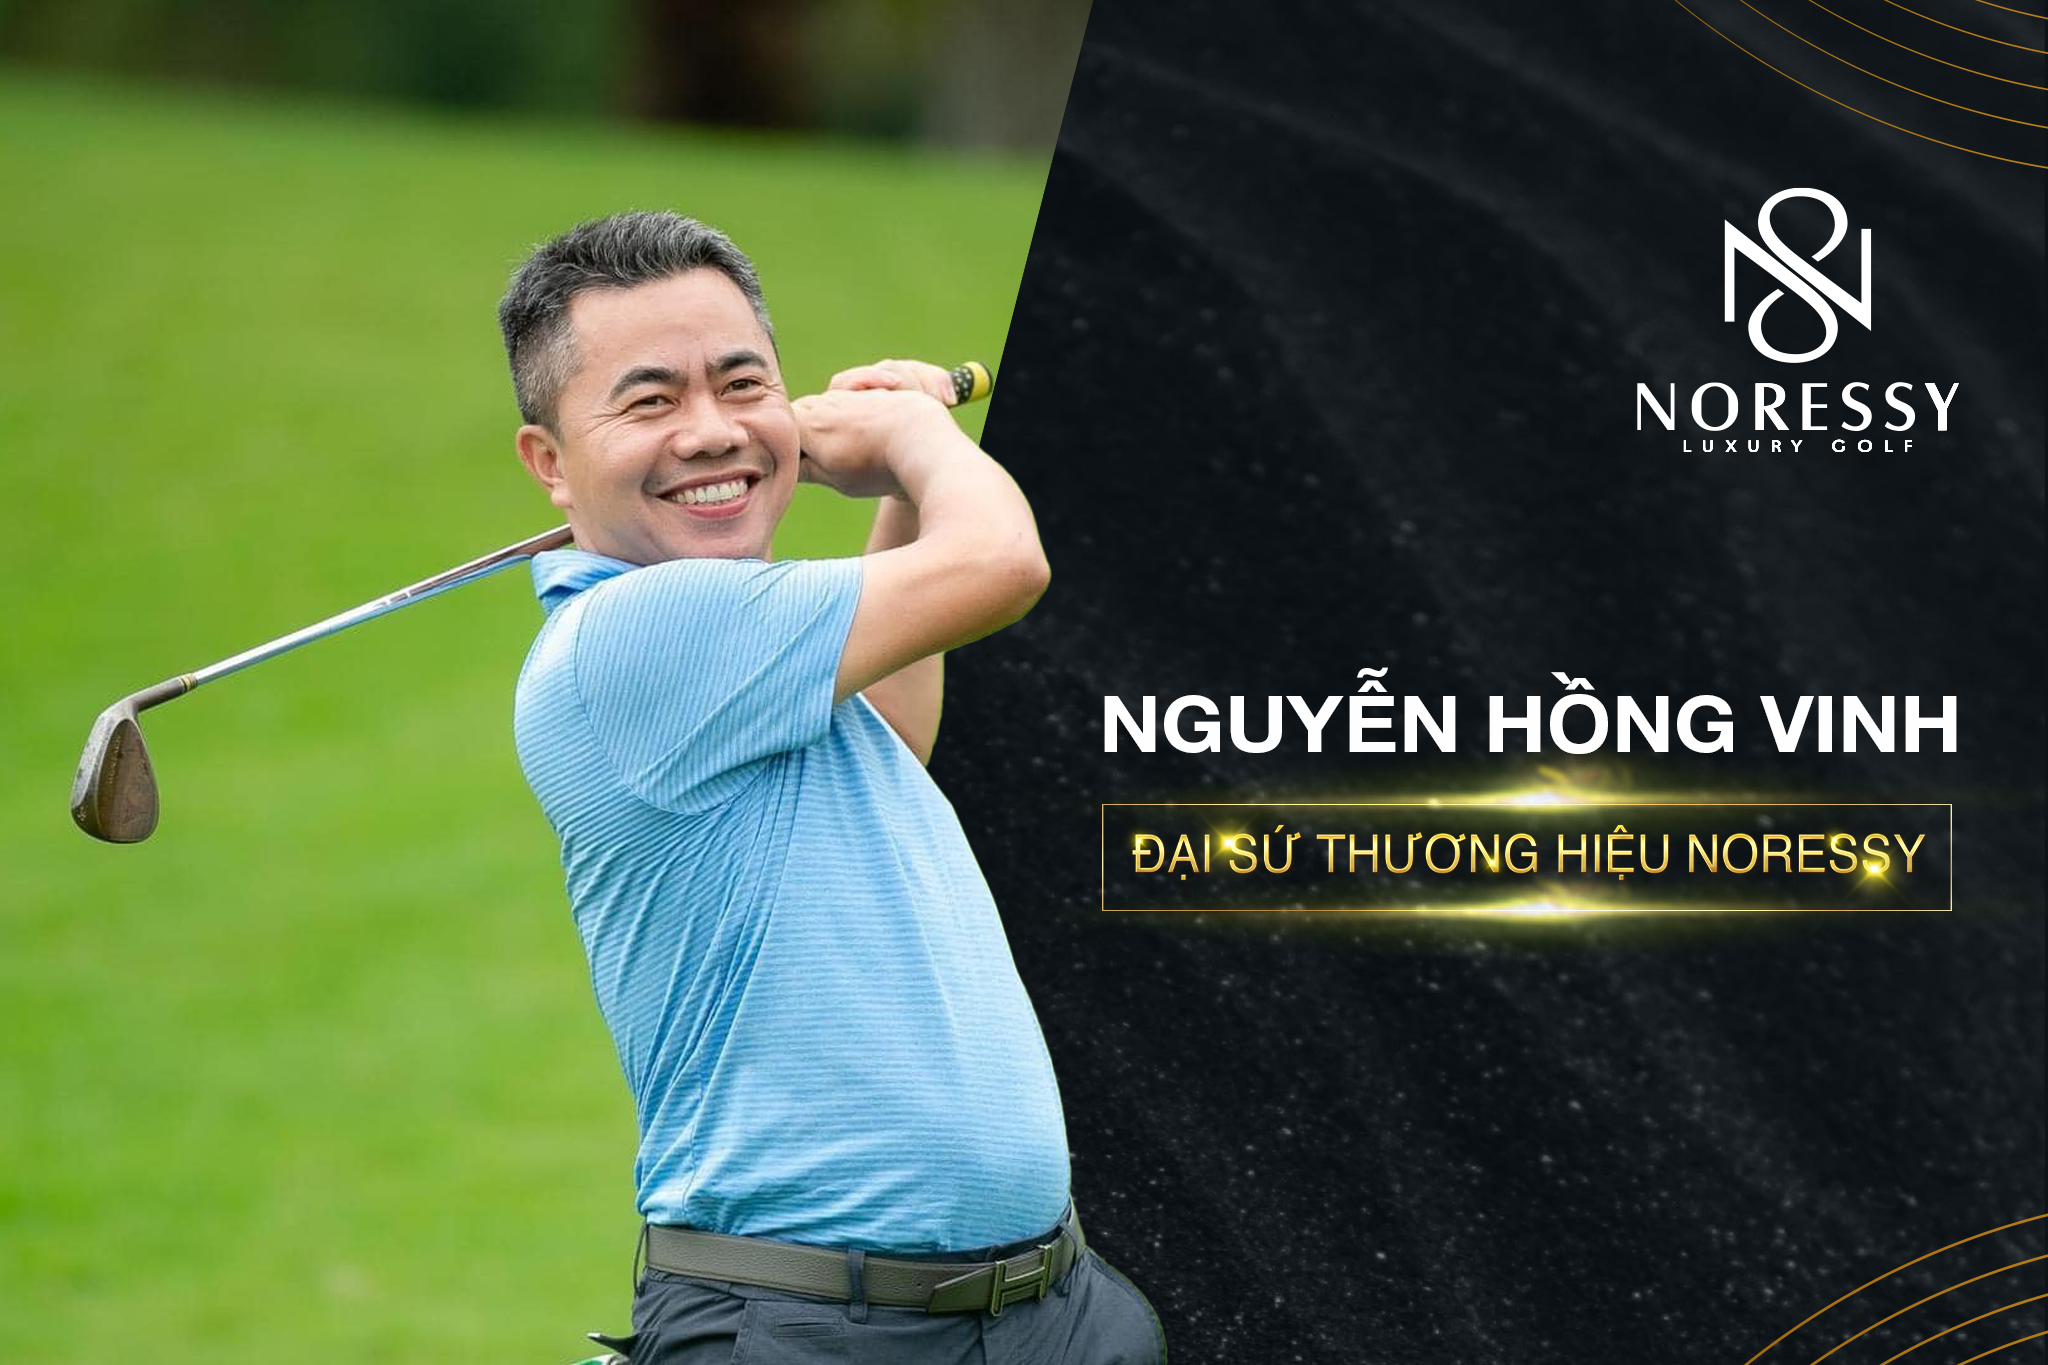 Ông Nguyễn Hồng Vinh trở thành Đại sứ Thương hiệu là một bước ngoặt trong tiến trình đẩy mạnh thương hiệu của Noressy đến với đông đảo người yêu golf Việt.